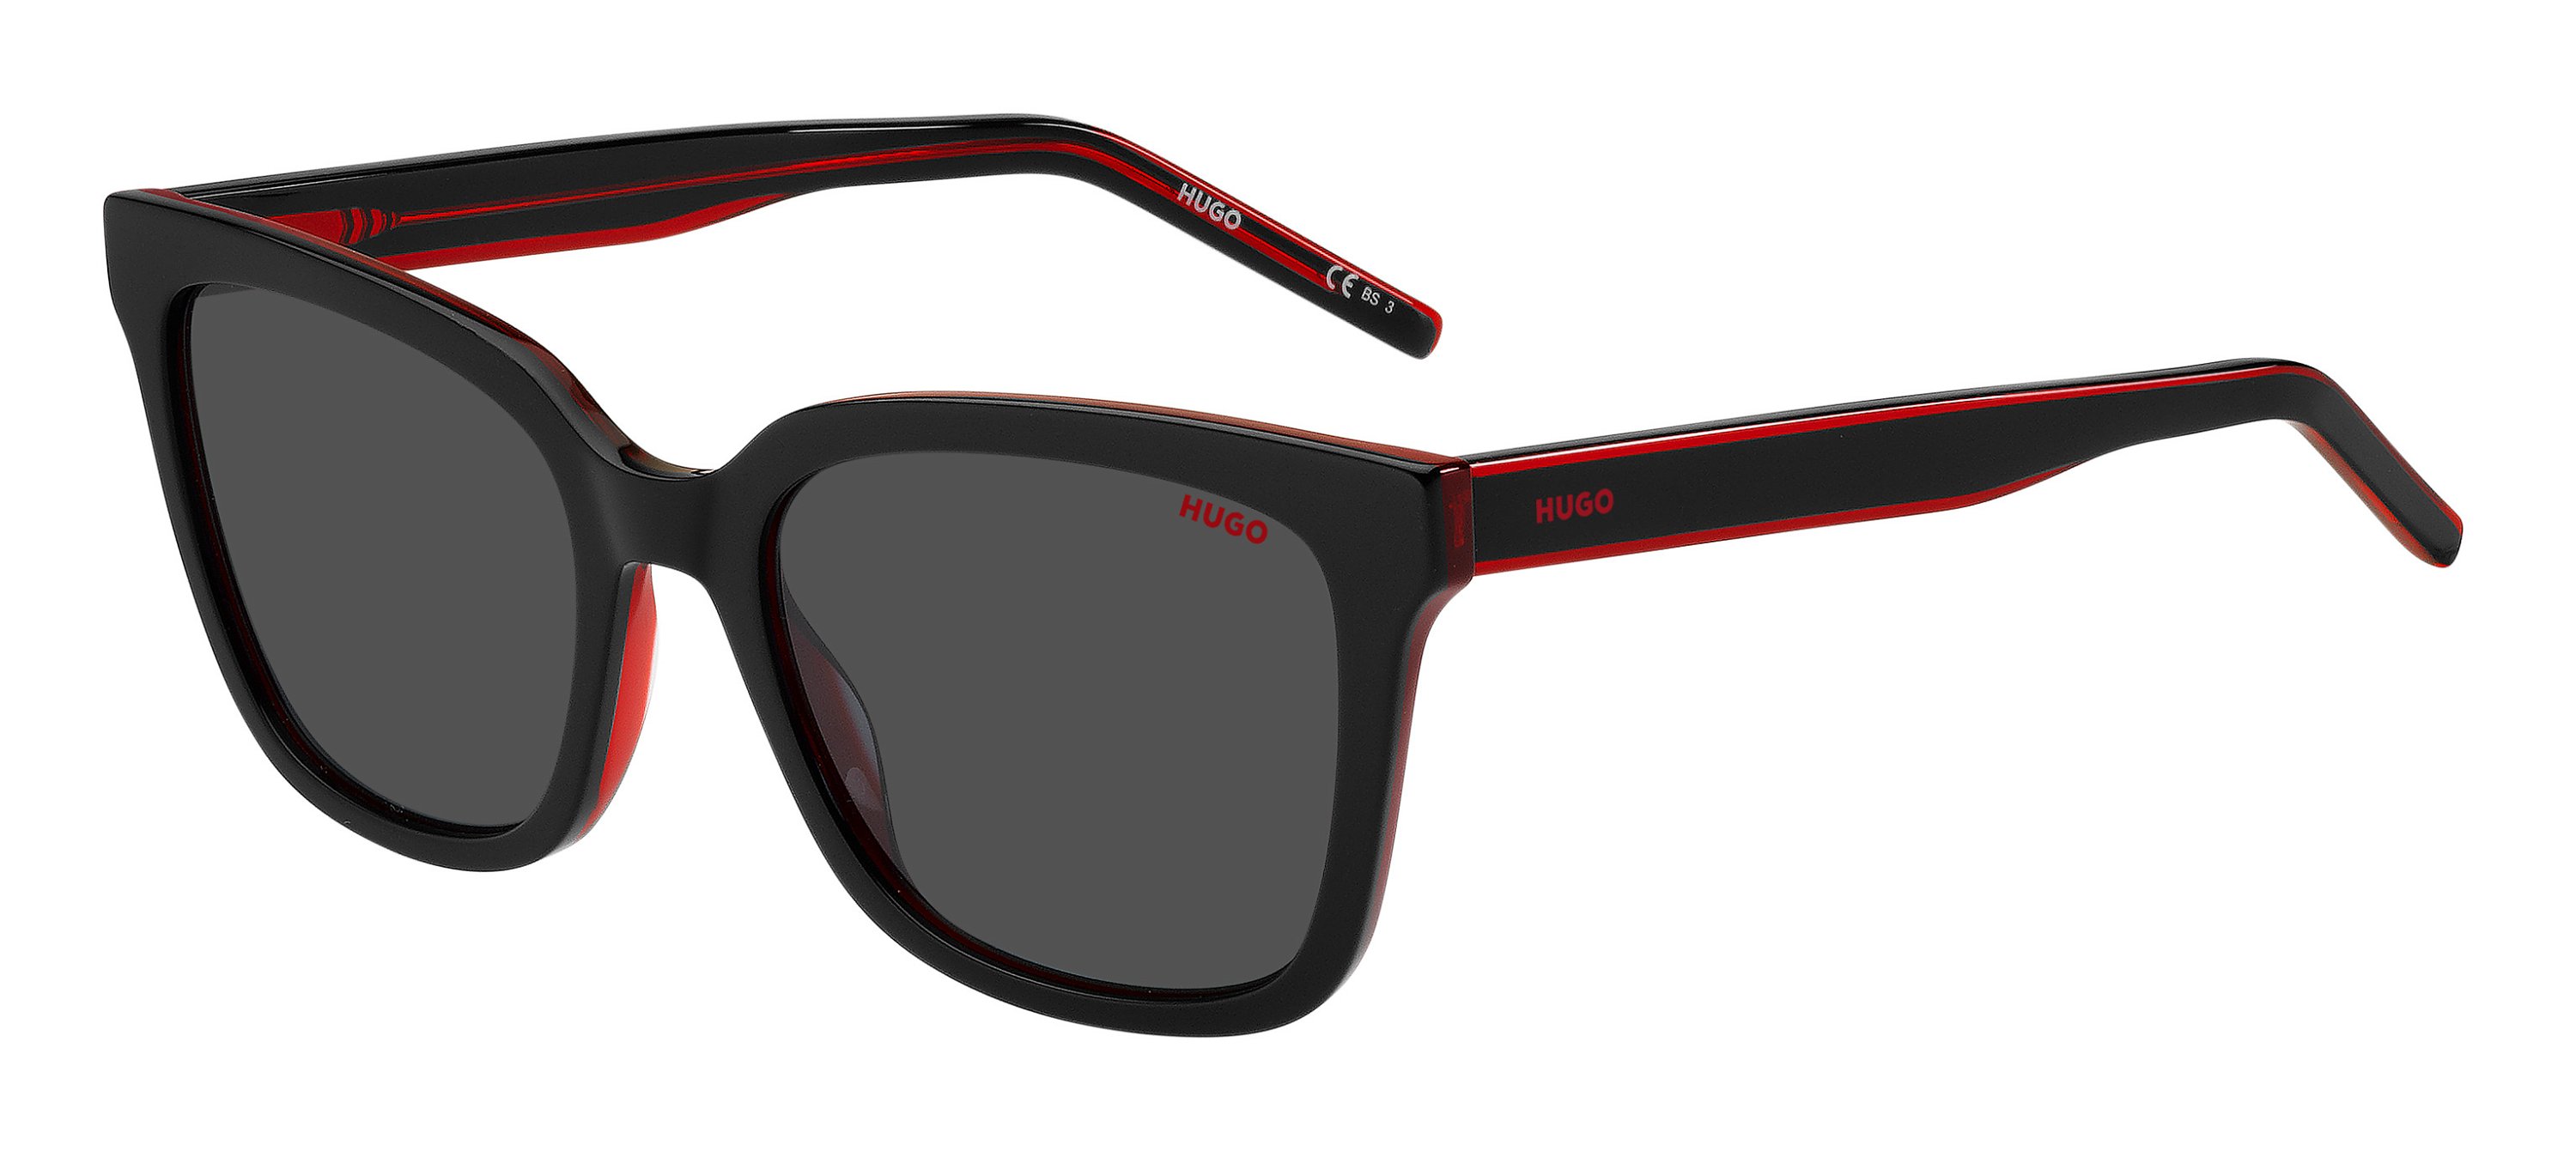 Das Bild zeigt die Sonnenbrille HG1248/S OIT von der Marke Hugo in schwarz/rot.